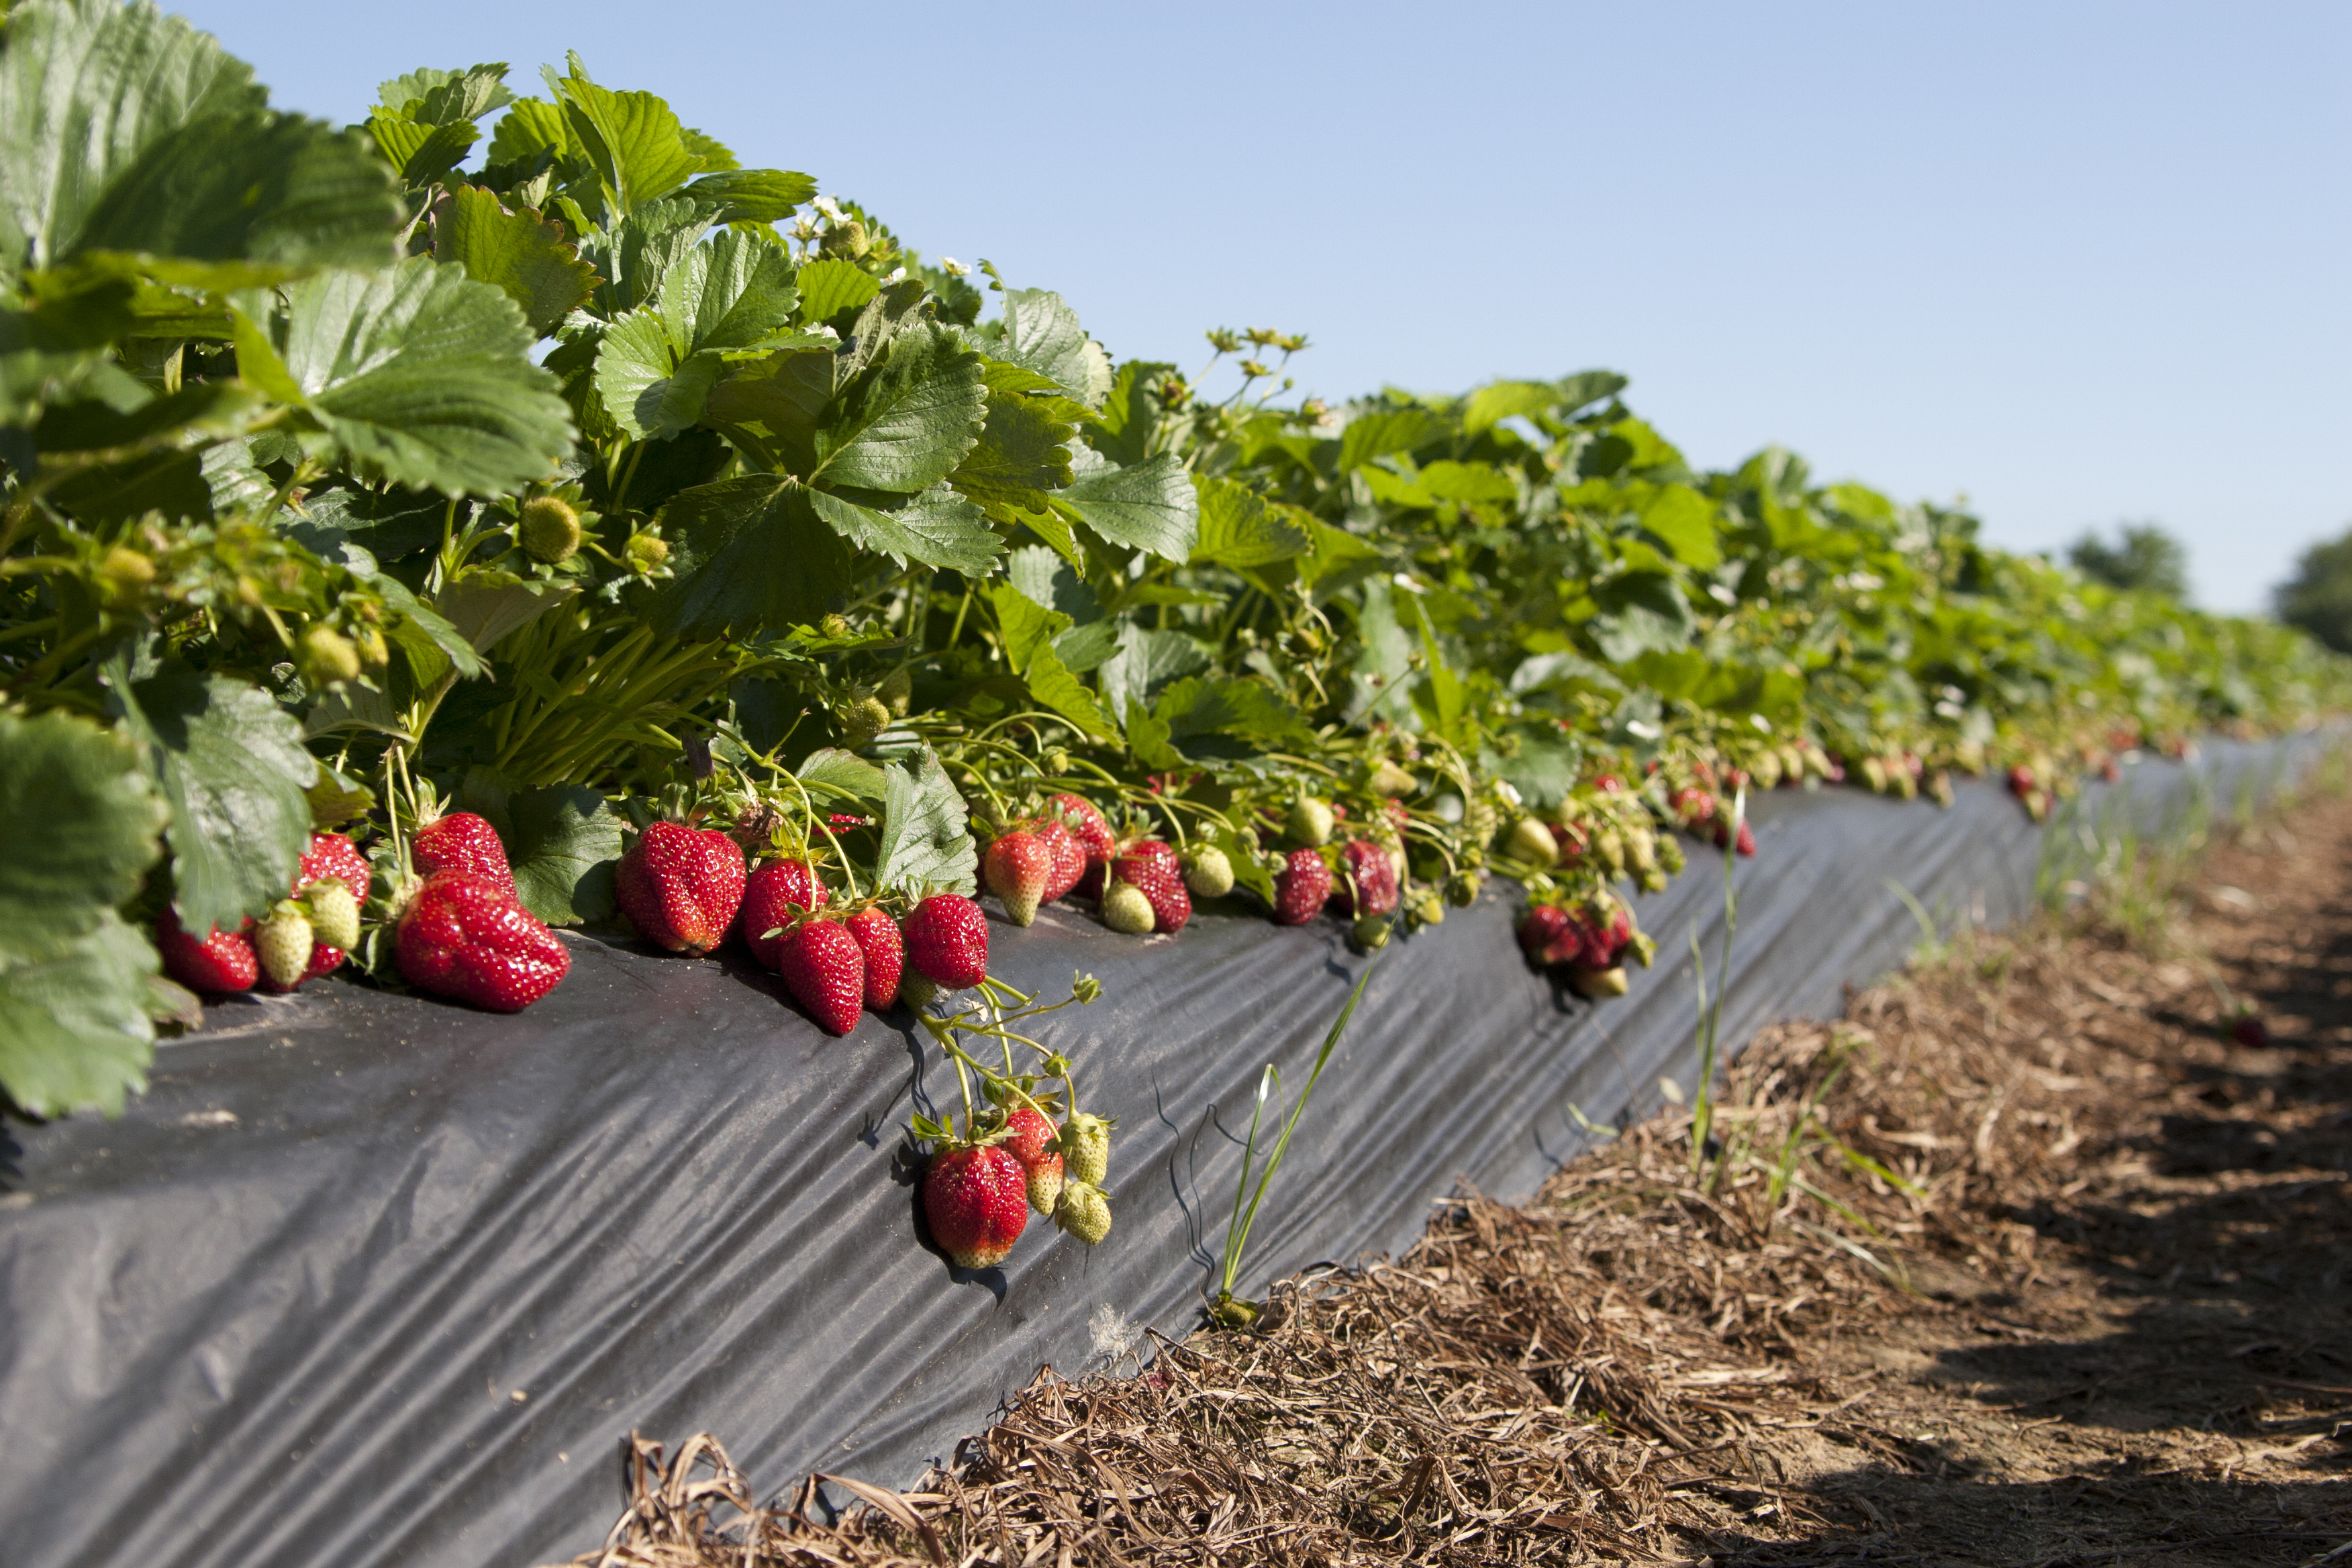 Strawberries - Washington Farms is your Athens corn maze ...